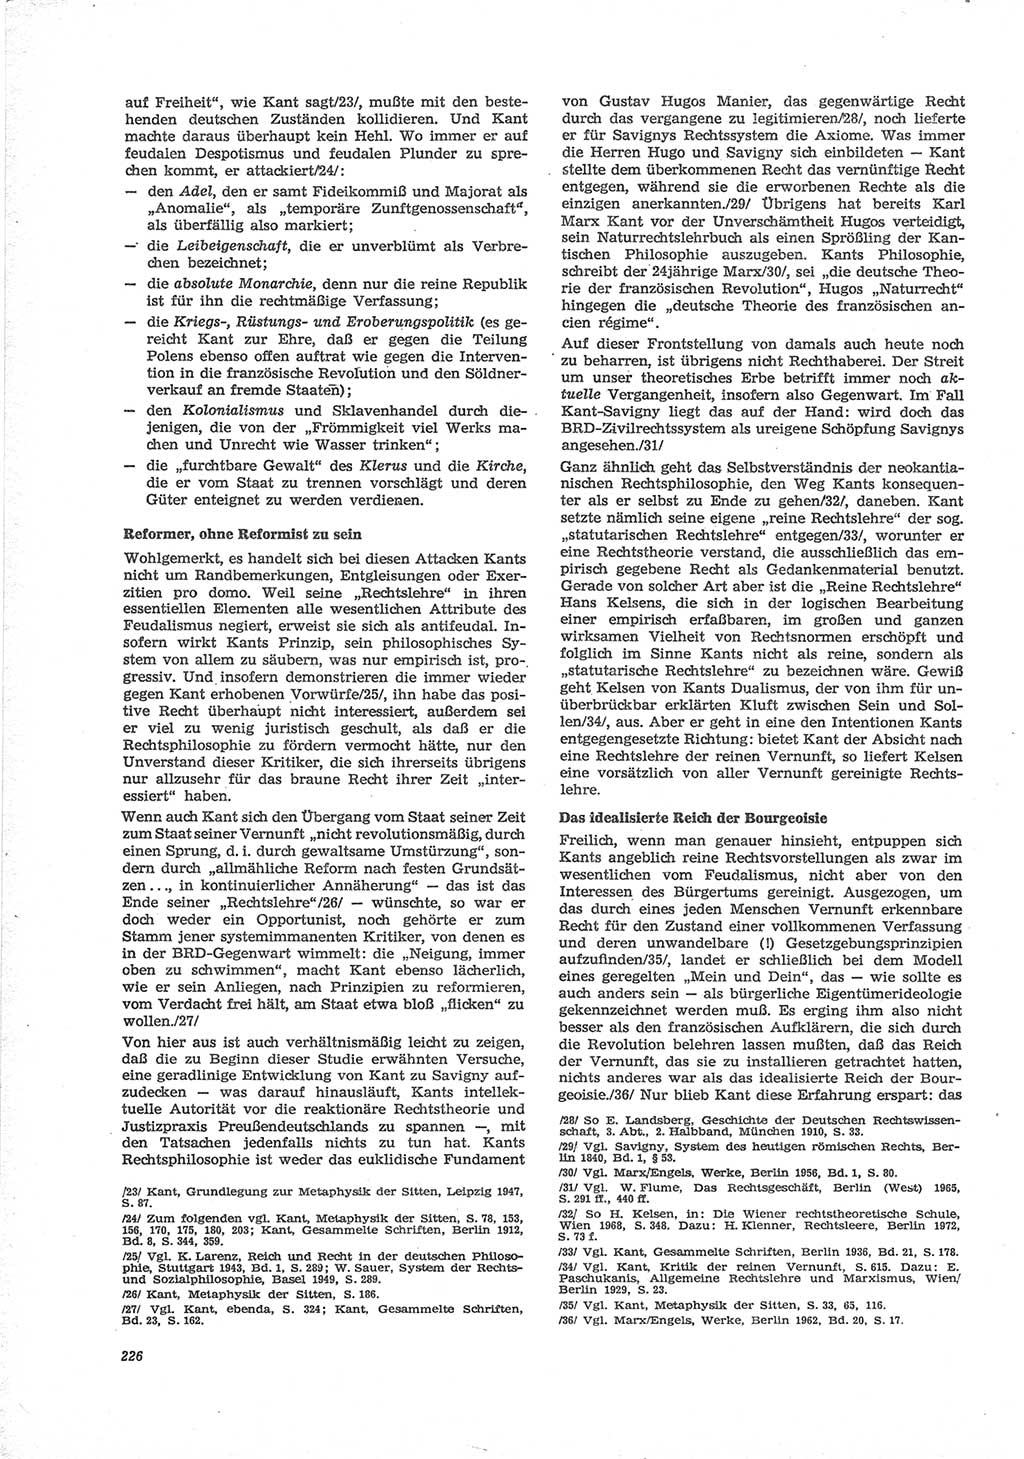 Neue Justiz (NJ), Zeitschrift für Recht und Rechtswissenschaft [Deutsche Demokratische Republik (DDR)], 28. Jahrgang 1974, Seite 226 (NJ DDR 1974, S. 226)